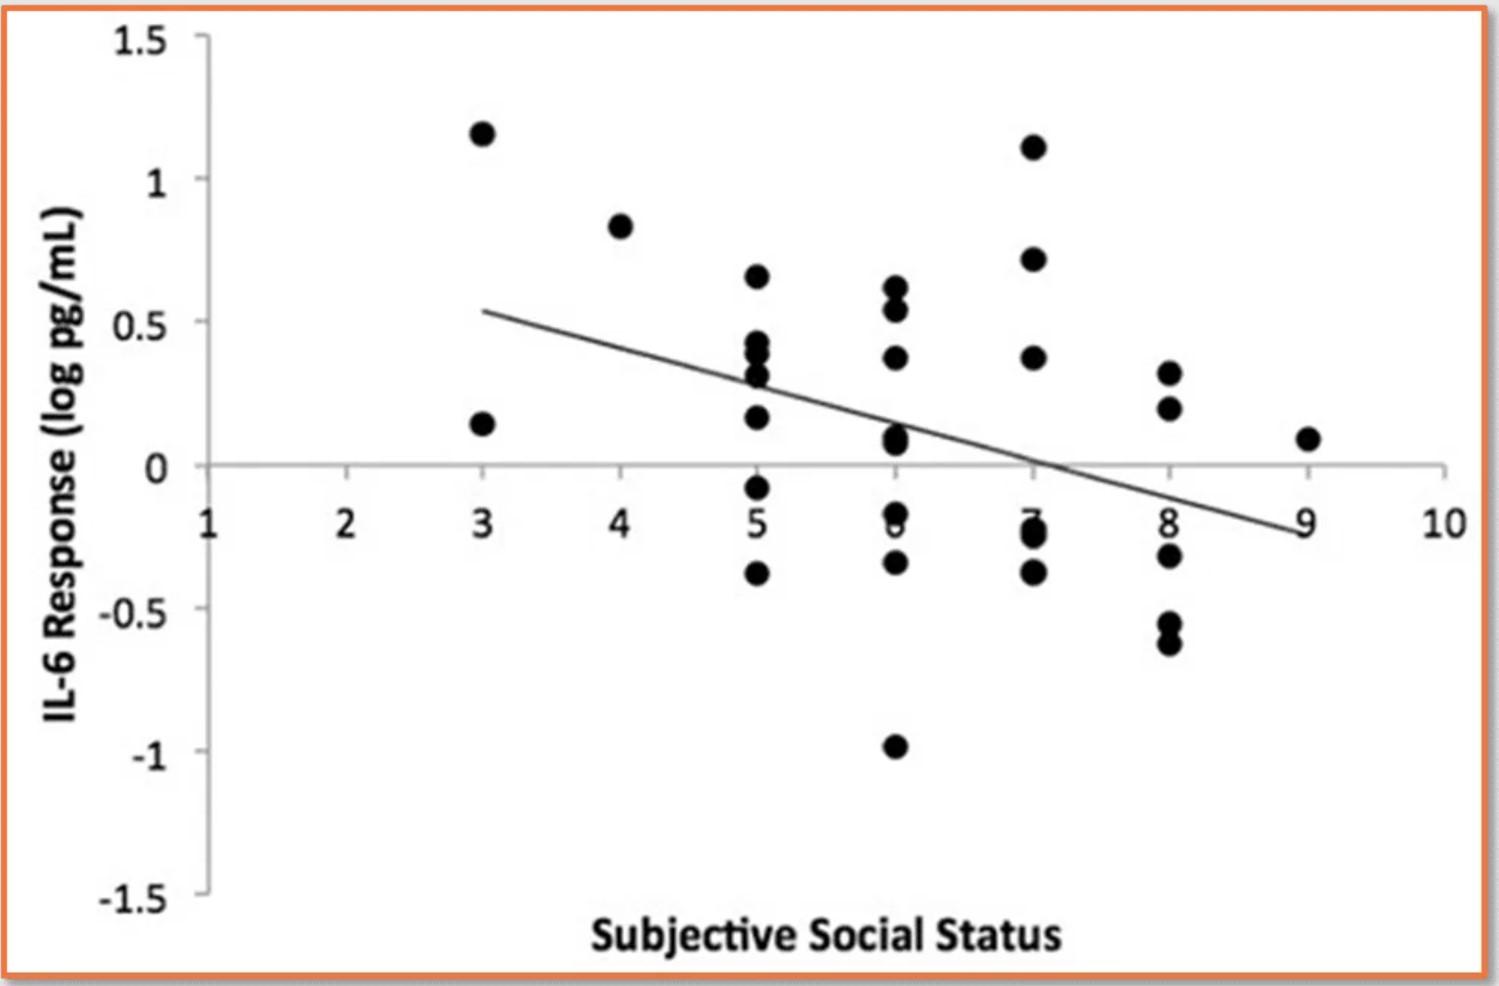 Hoe lager de subjectieve sociale status, hoe sterker de inflammatoire reactie op een sociale stressor